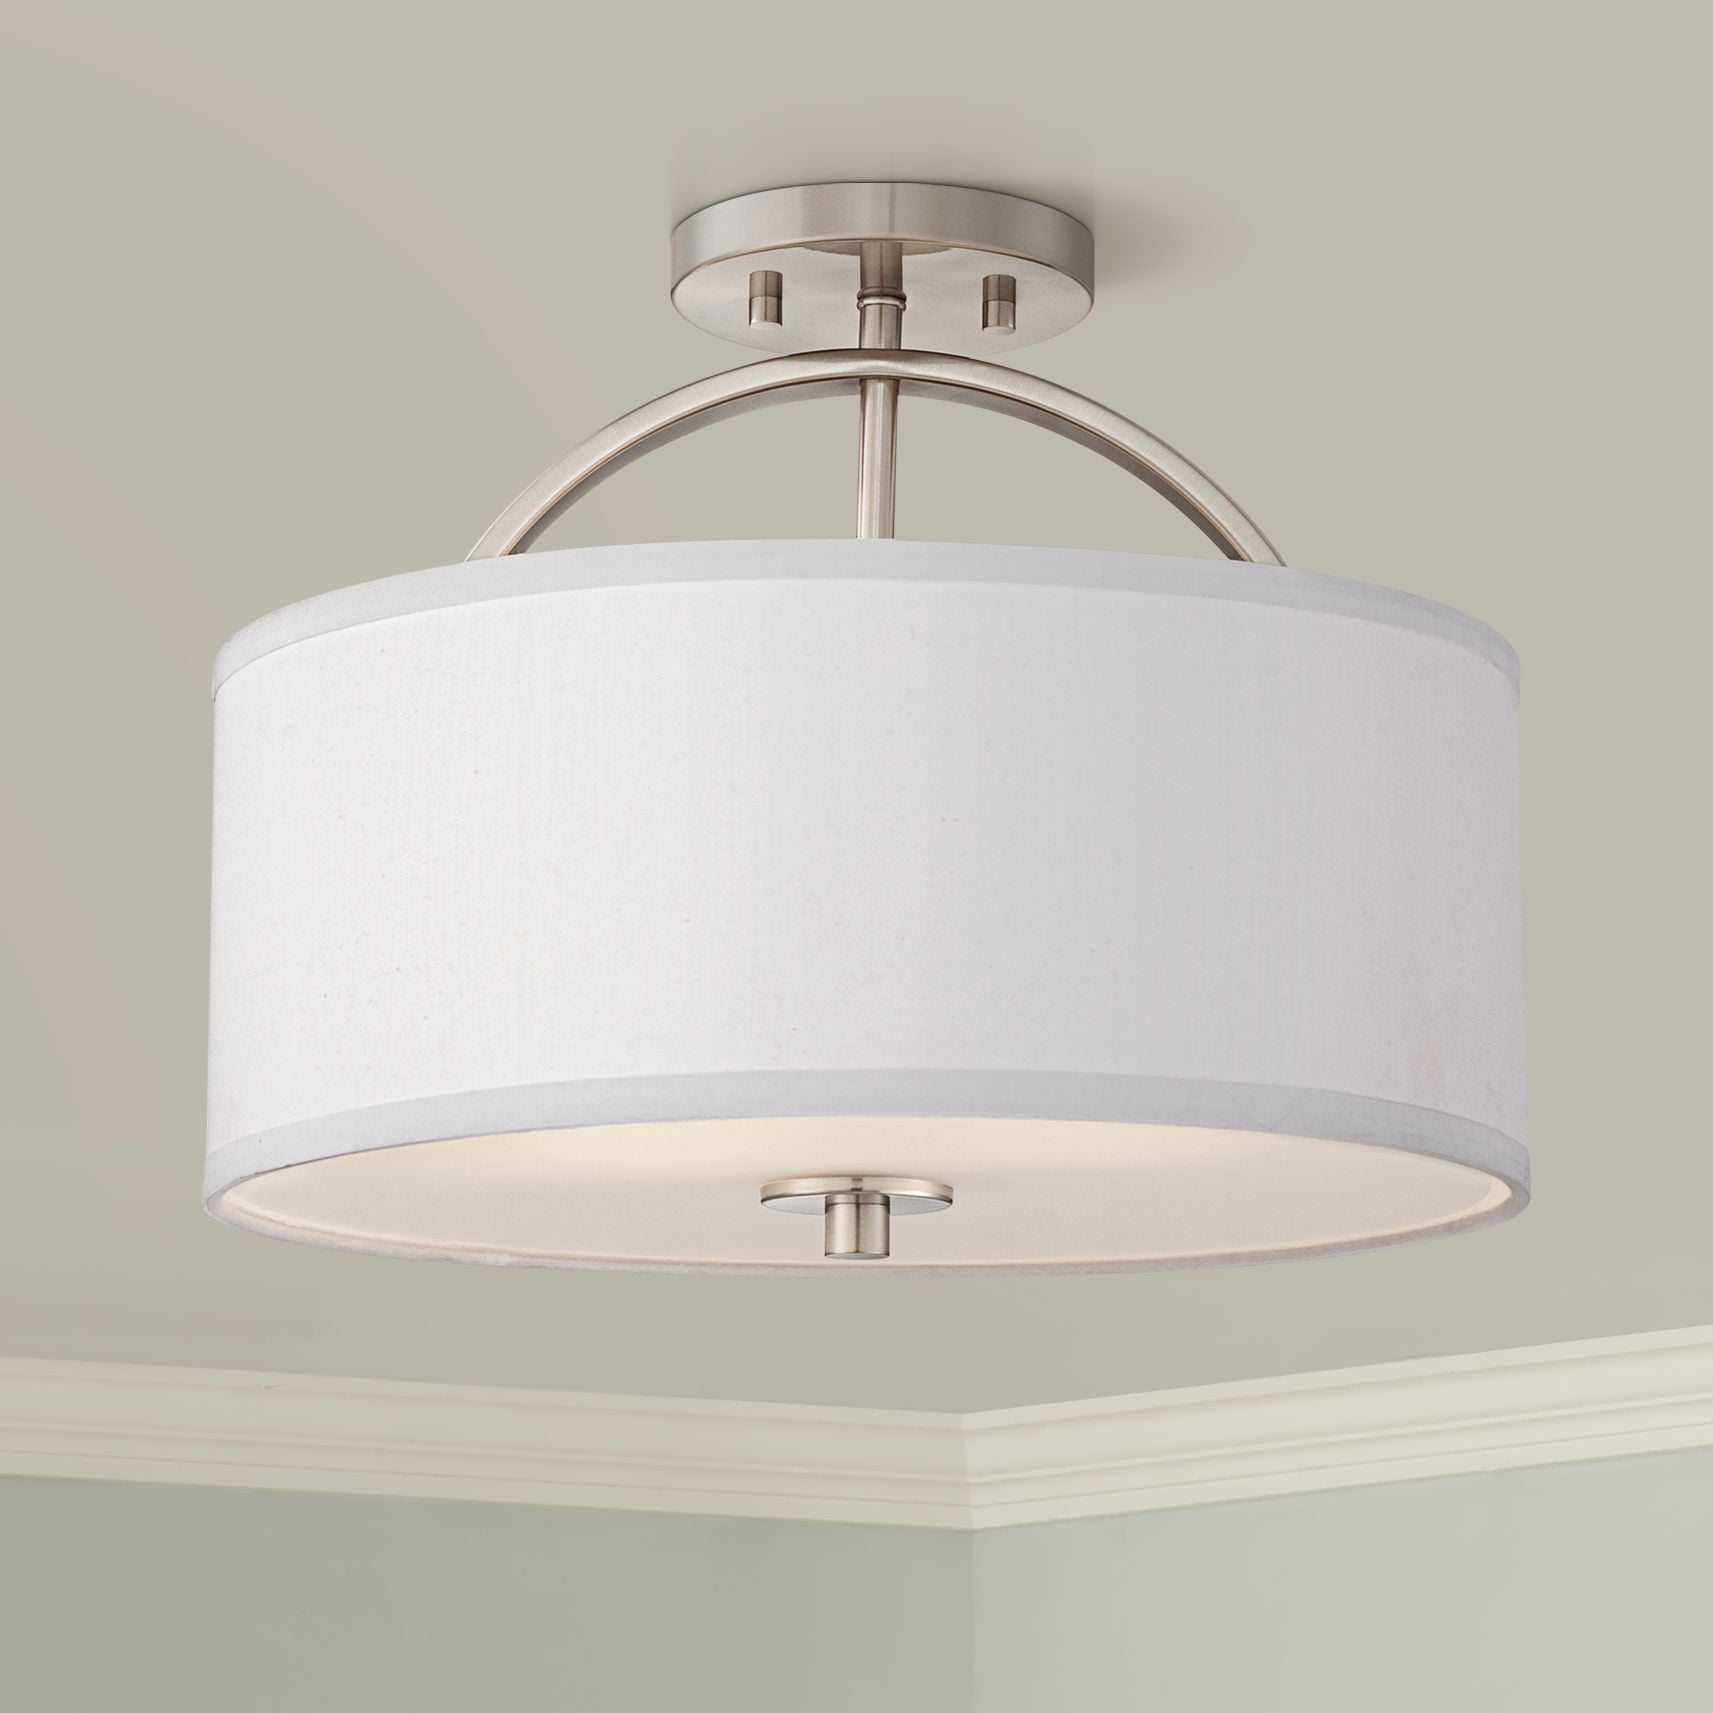 Modern Ceiling Light Fixtures For Bedroom ~ Possini Euro Design Modern ...